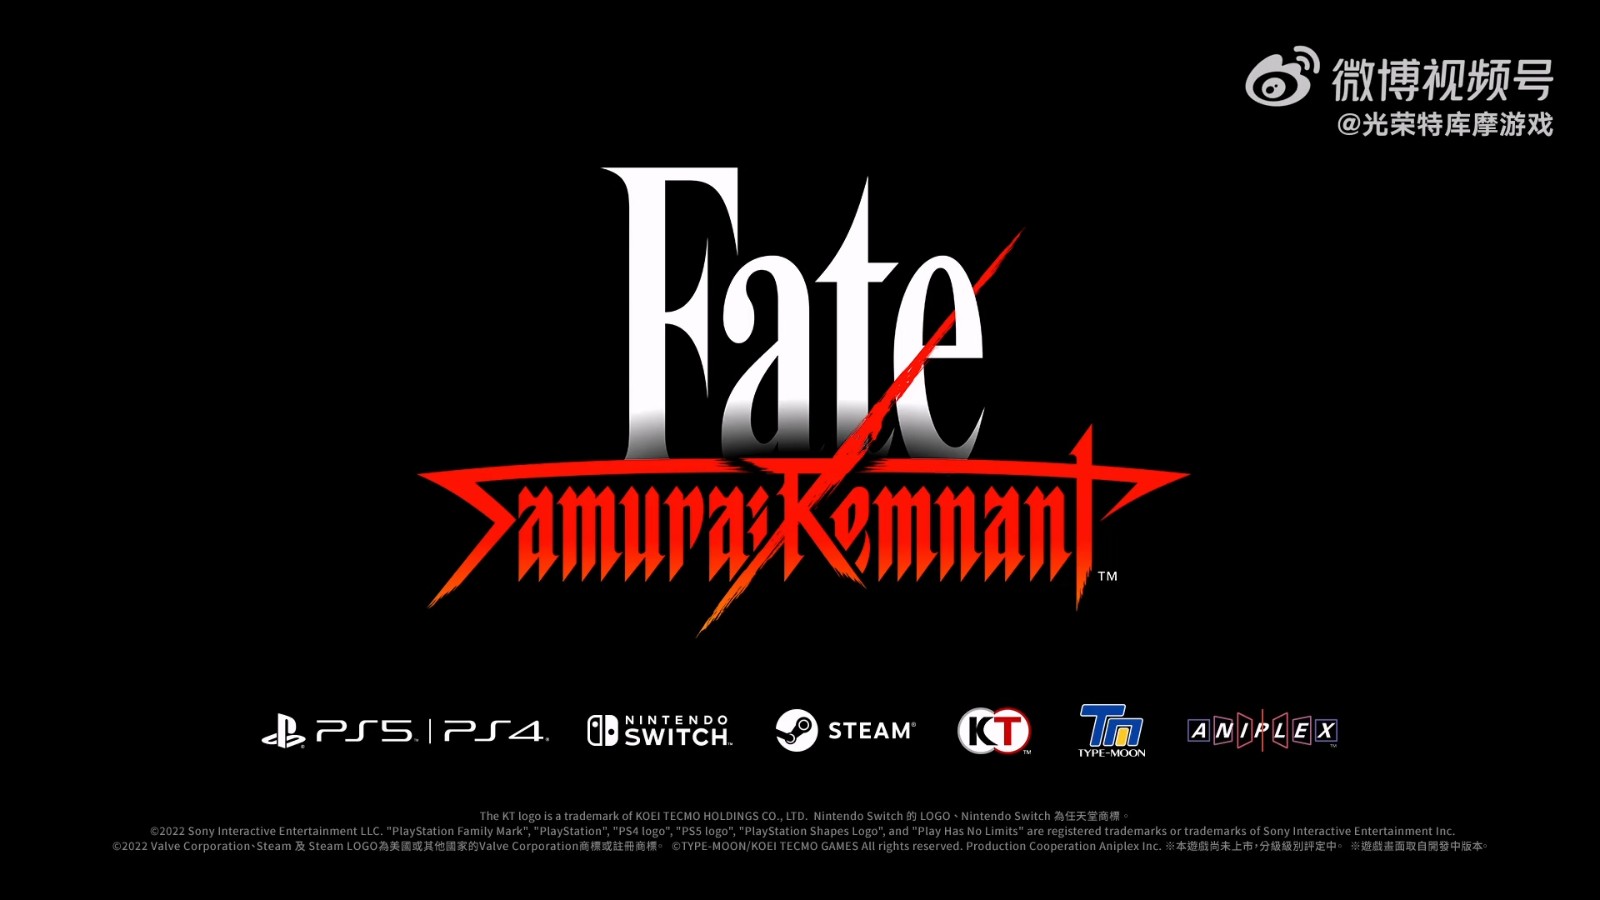 光荣公布“Fate”系列最新作《Fate/Samurai Remnant》 2023年发售 二次世界 第10张